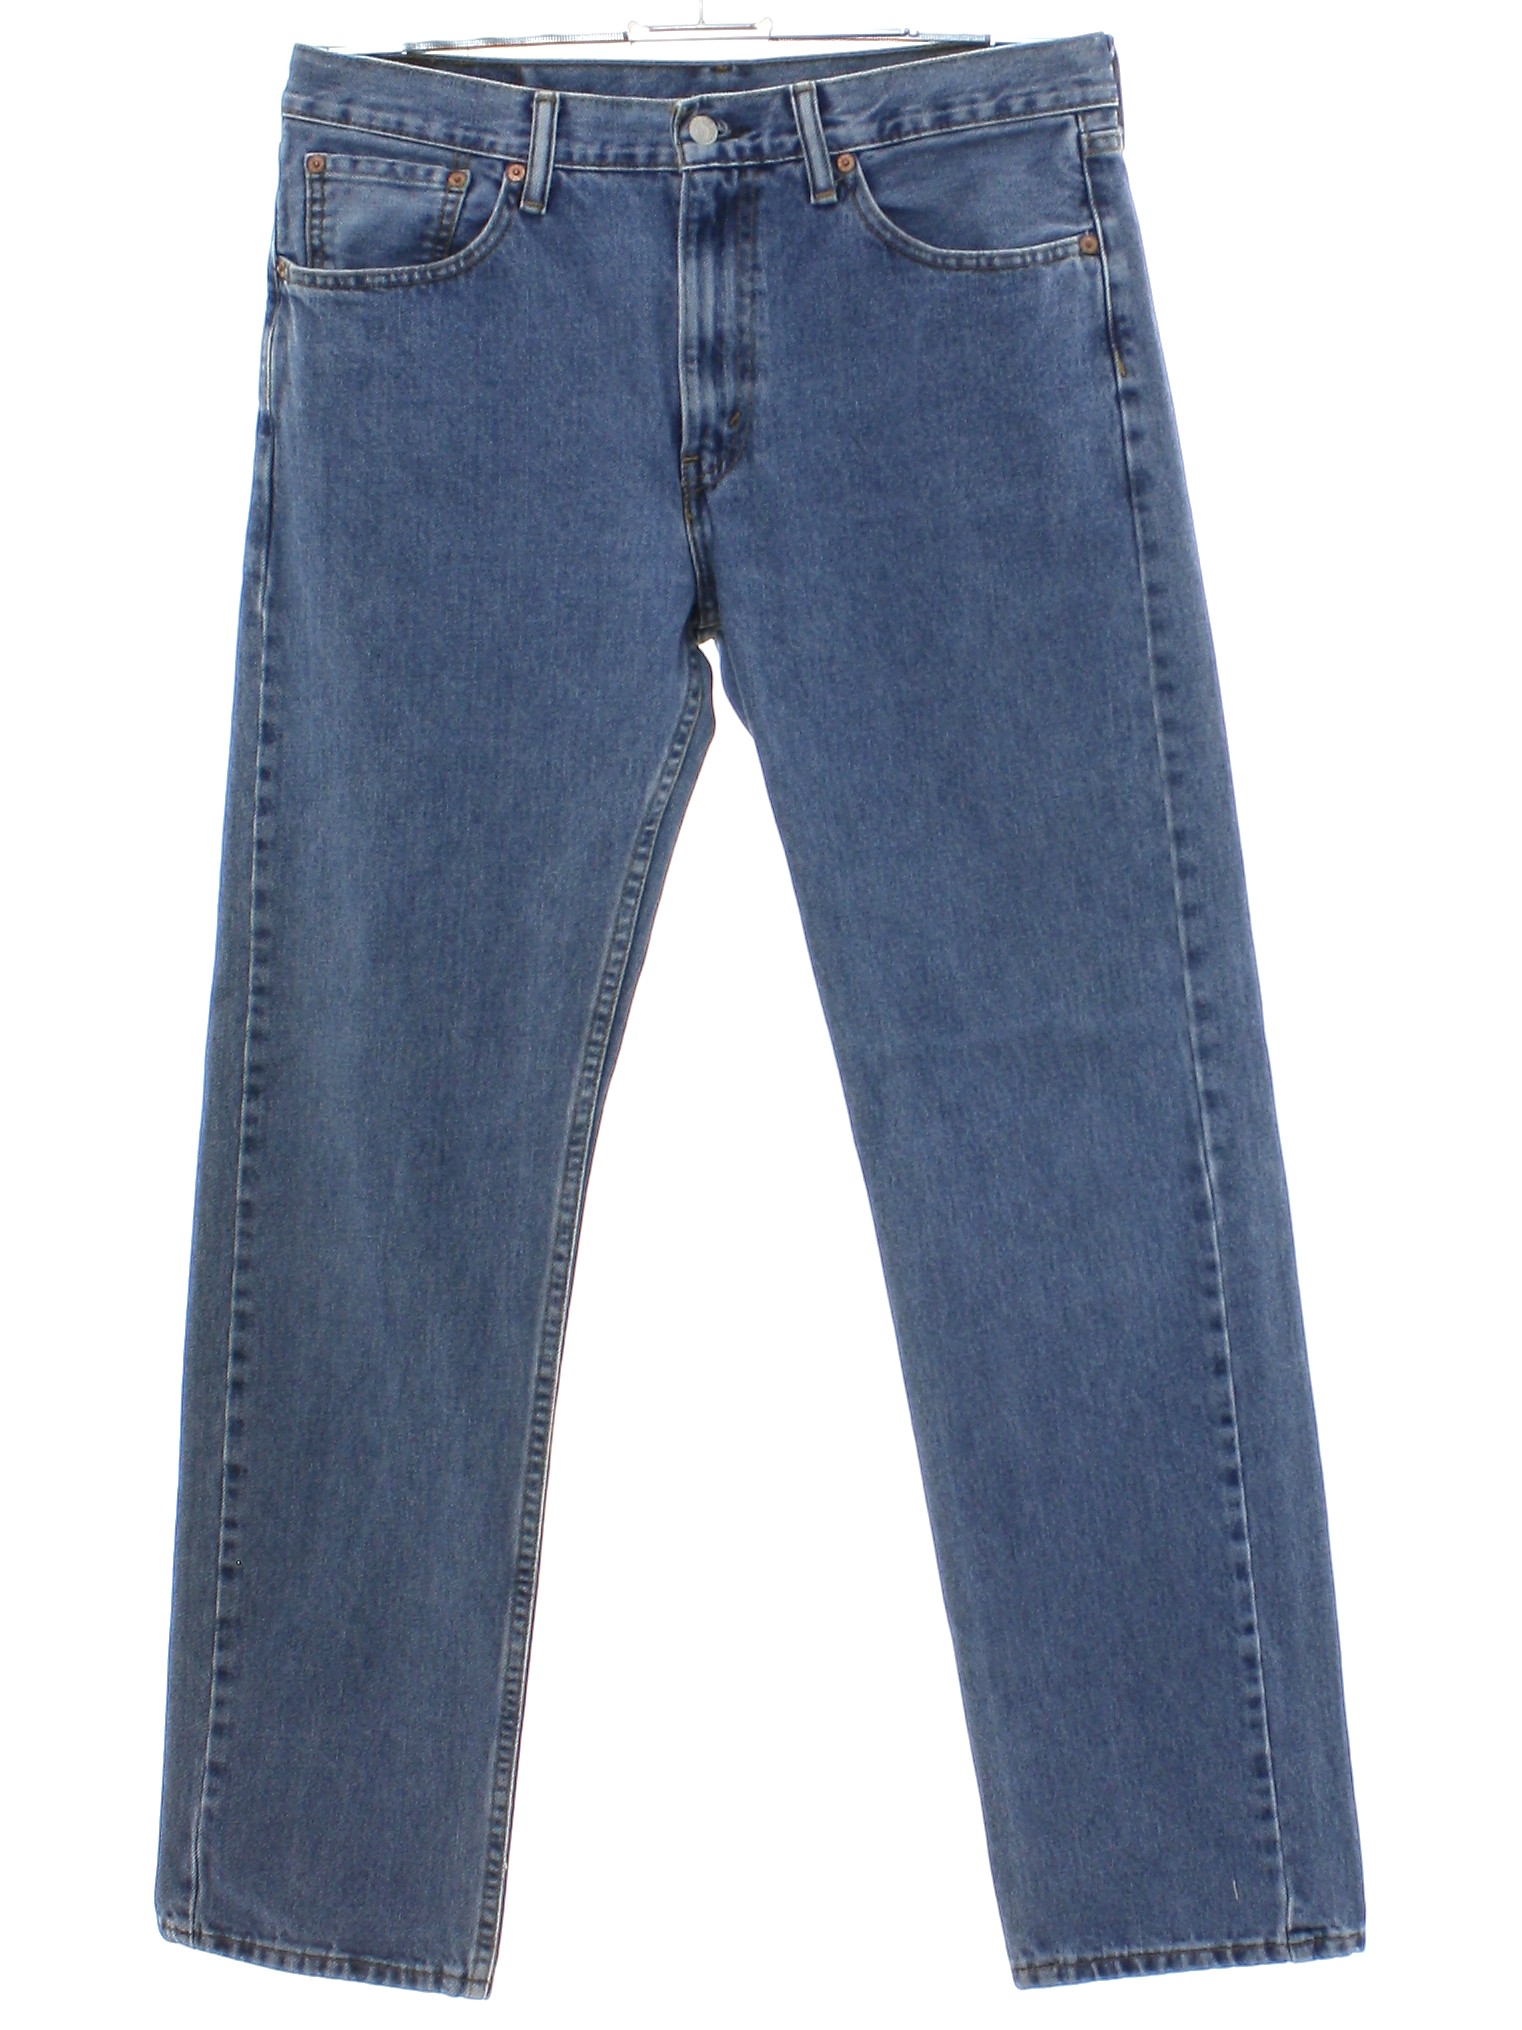 Pants: 90s -Levis 505- Mens medium blue background cotton denim with ...